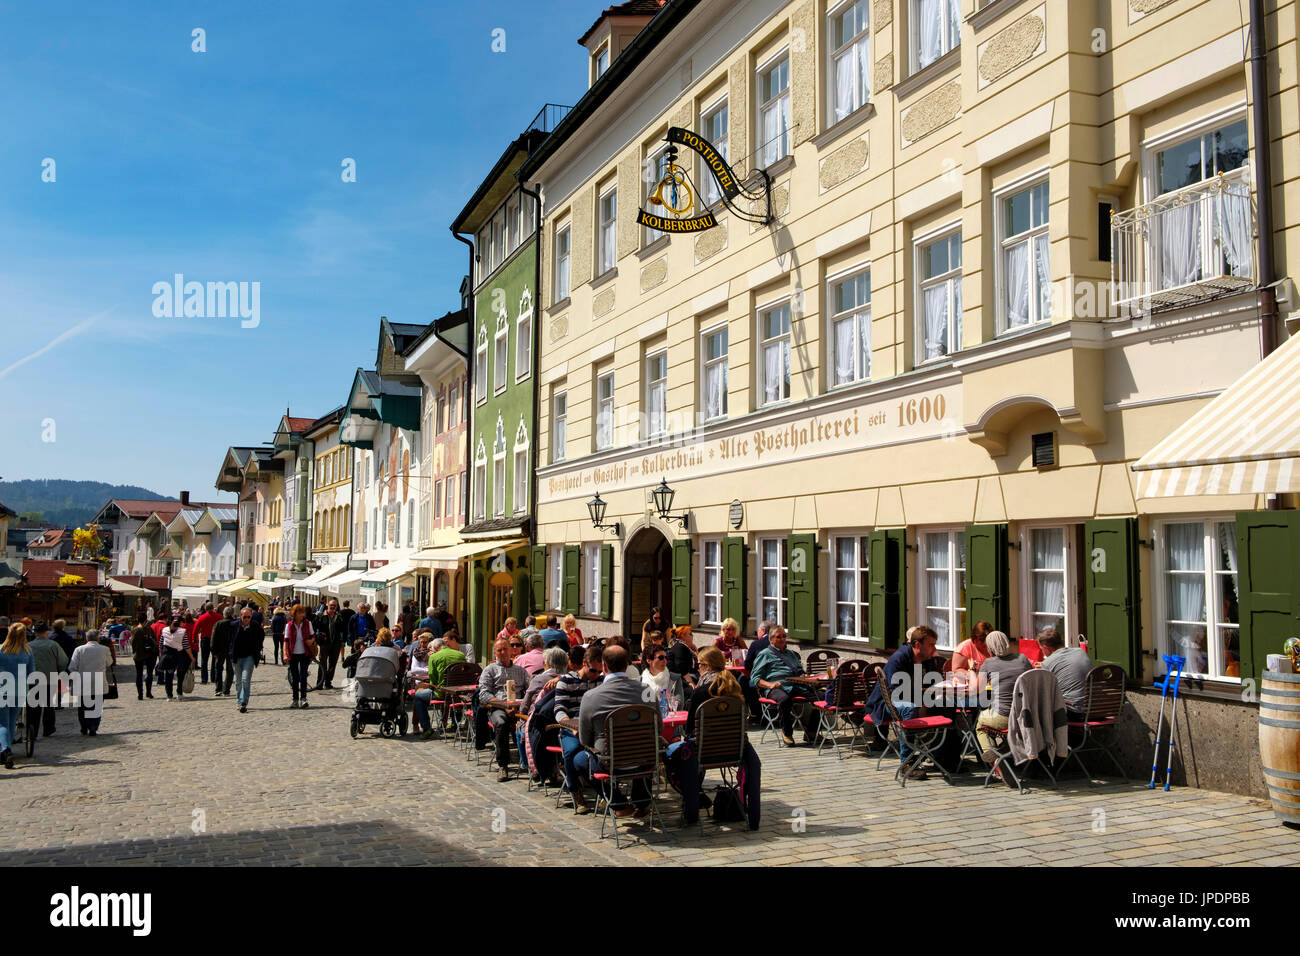 Les gens assis dans une taverne en face de la rangée de maisons historiques, 9, Bad Tolz, Upper Bavaria, Bavaria, Germany Banque D'Images